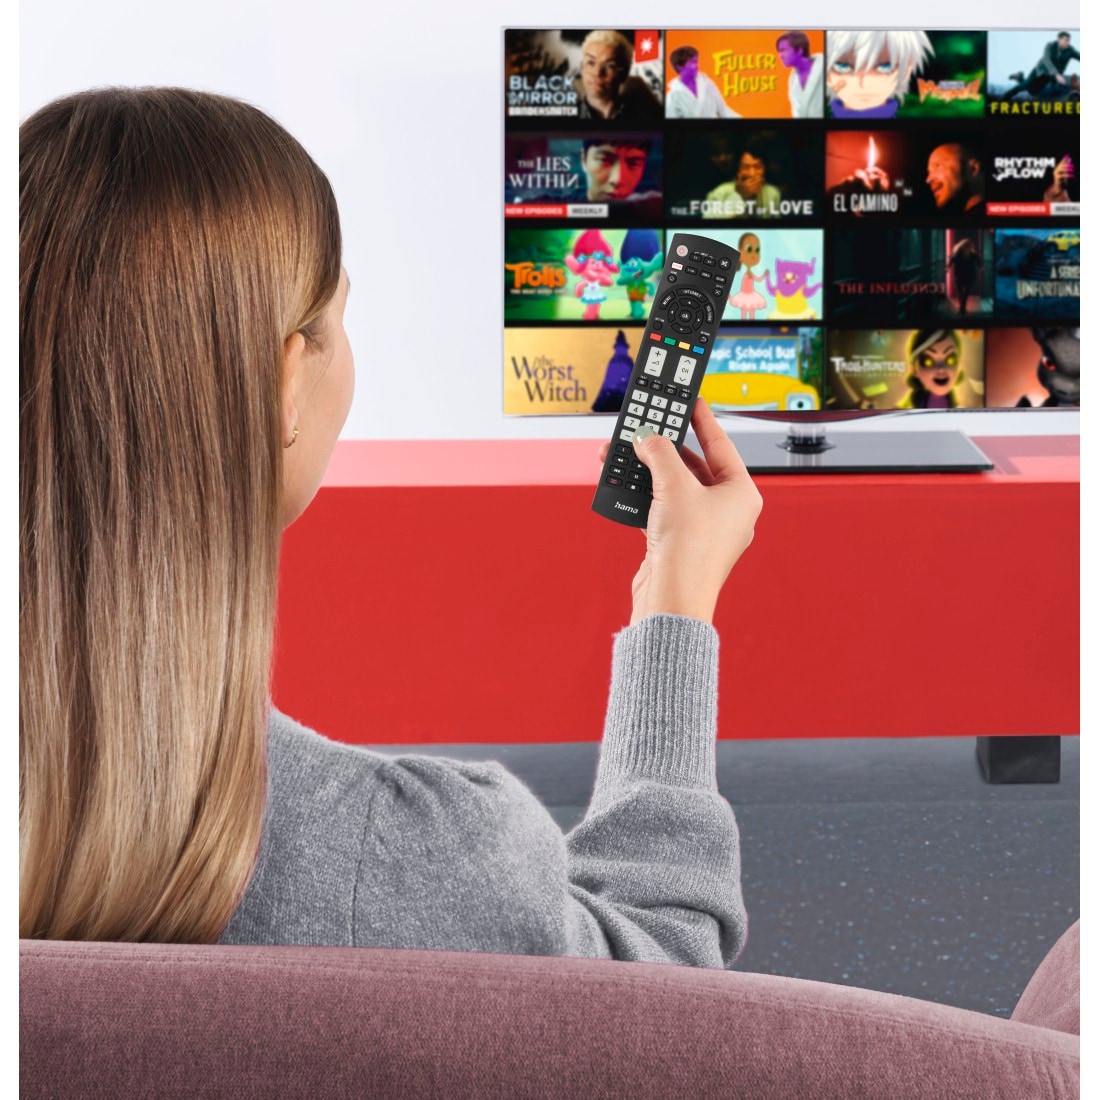 Hama Universal-Fernbedienung »Universal Ersatzfernbedienung für Panasonic TV, lernfähig«, 1-in-1